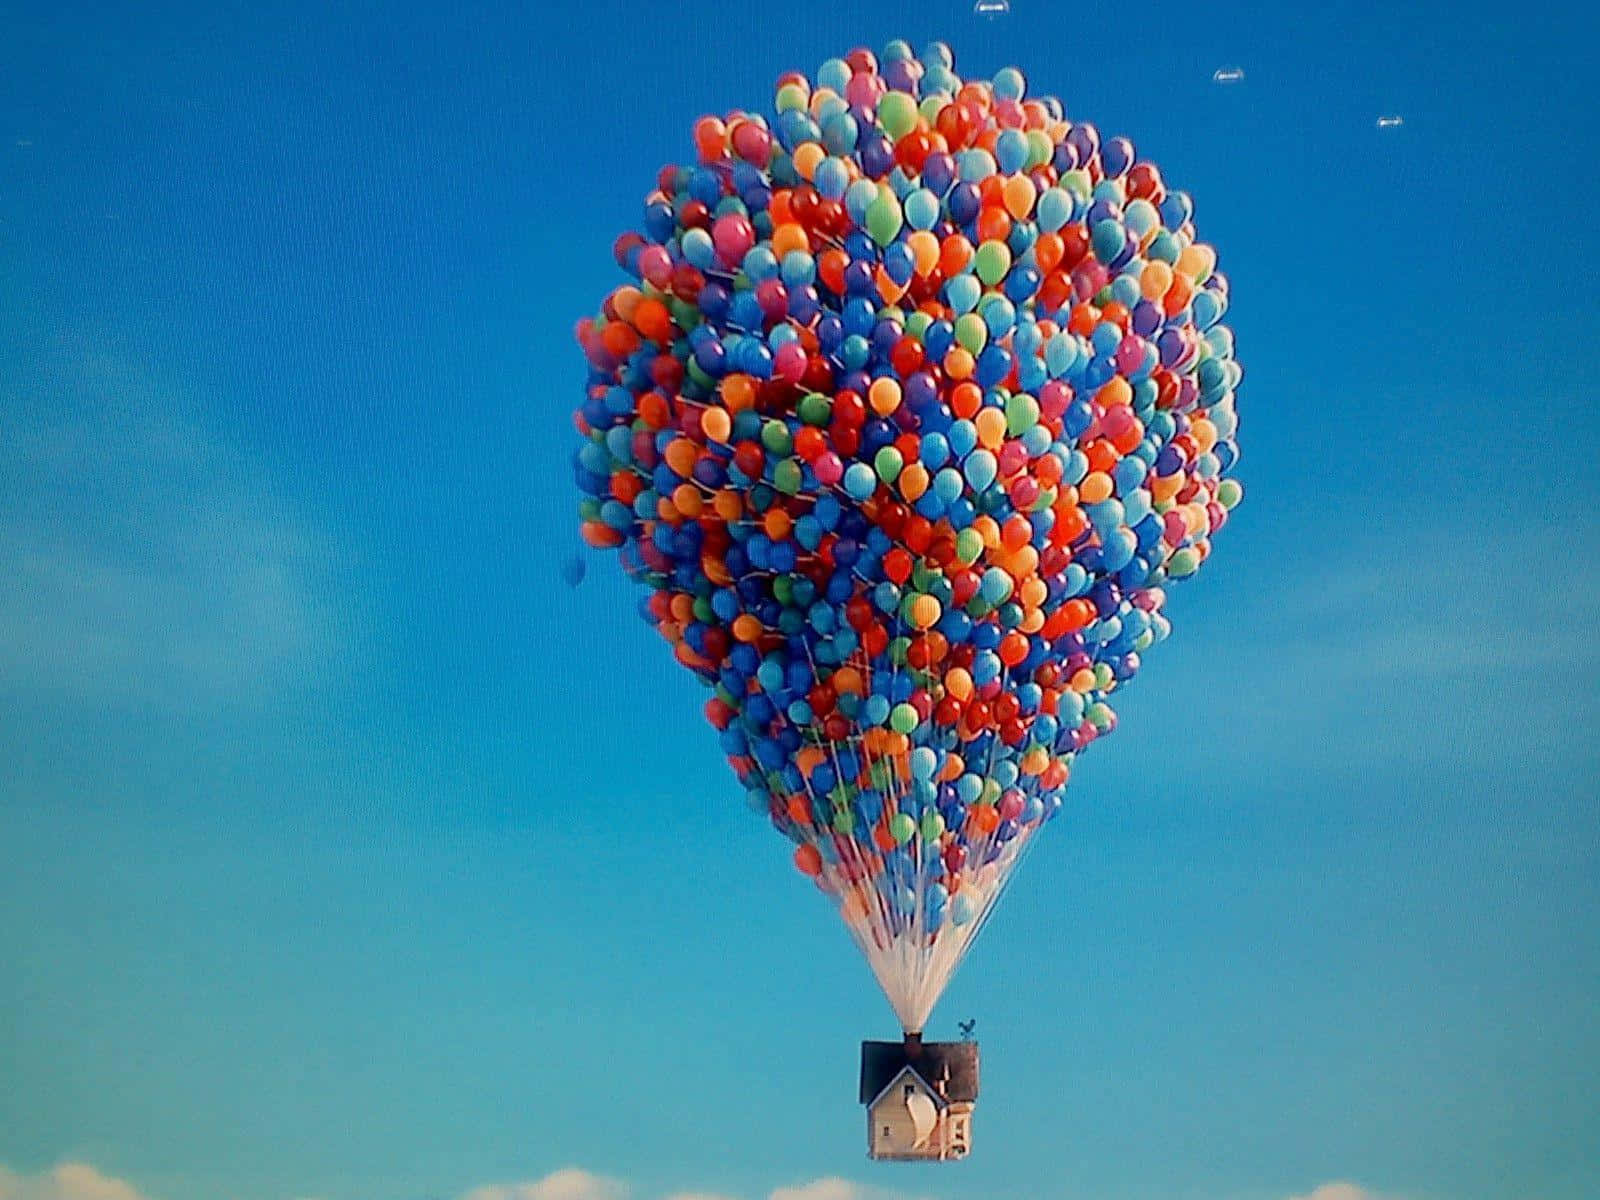 Färggladavarmluftballonger Dyker Upp Och Skapar En Kalejdoskopisk Effekt På Himlen.